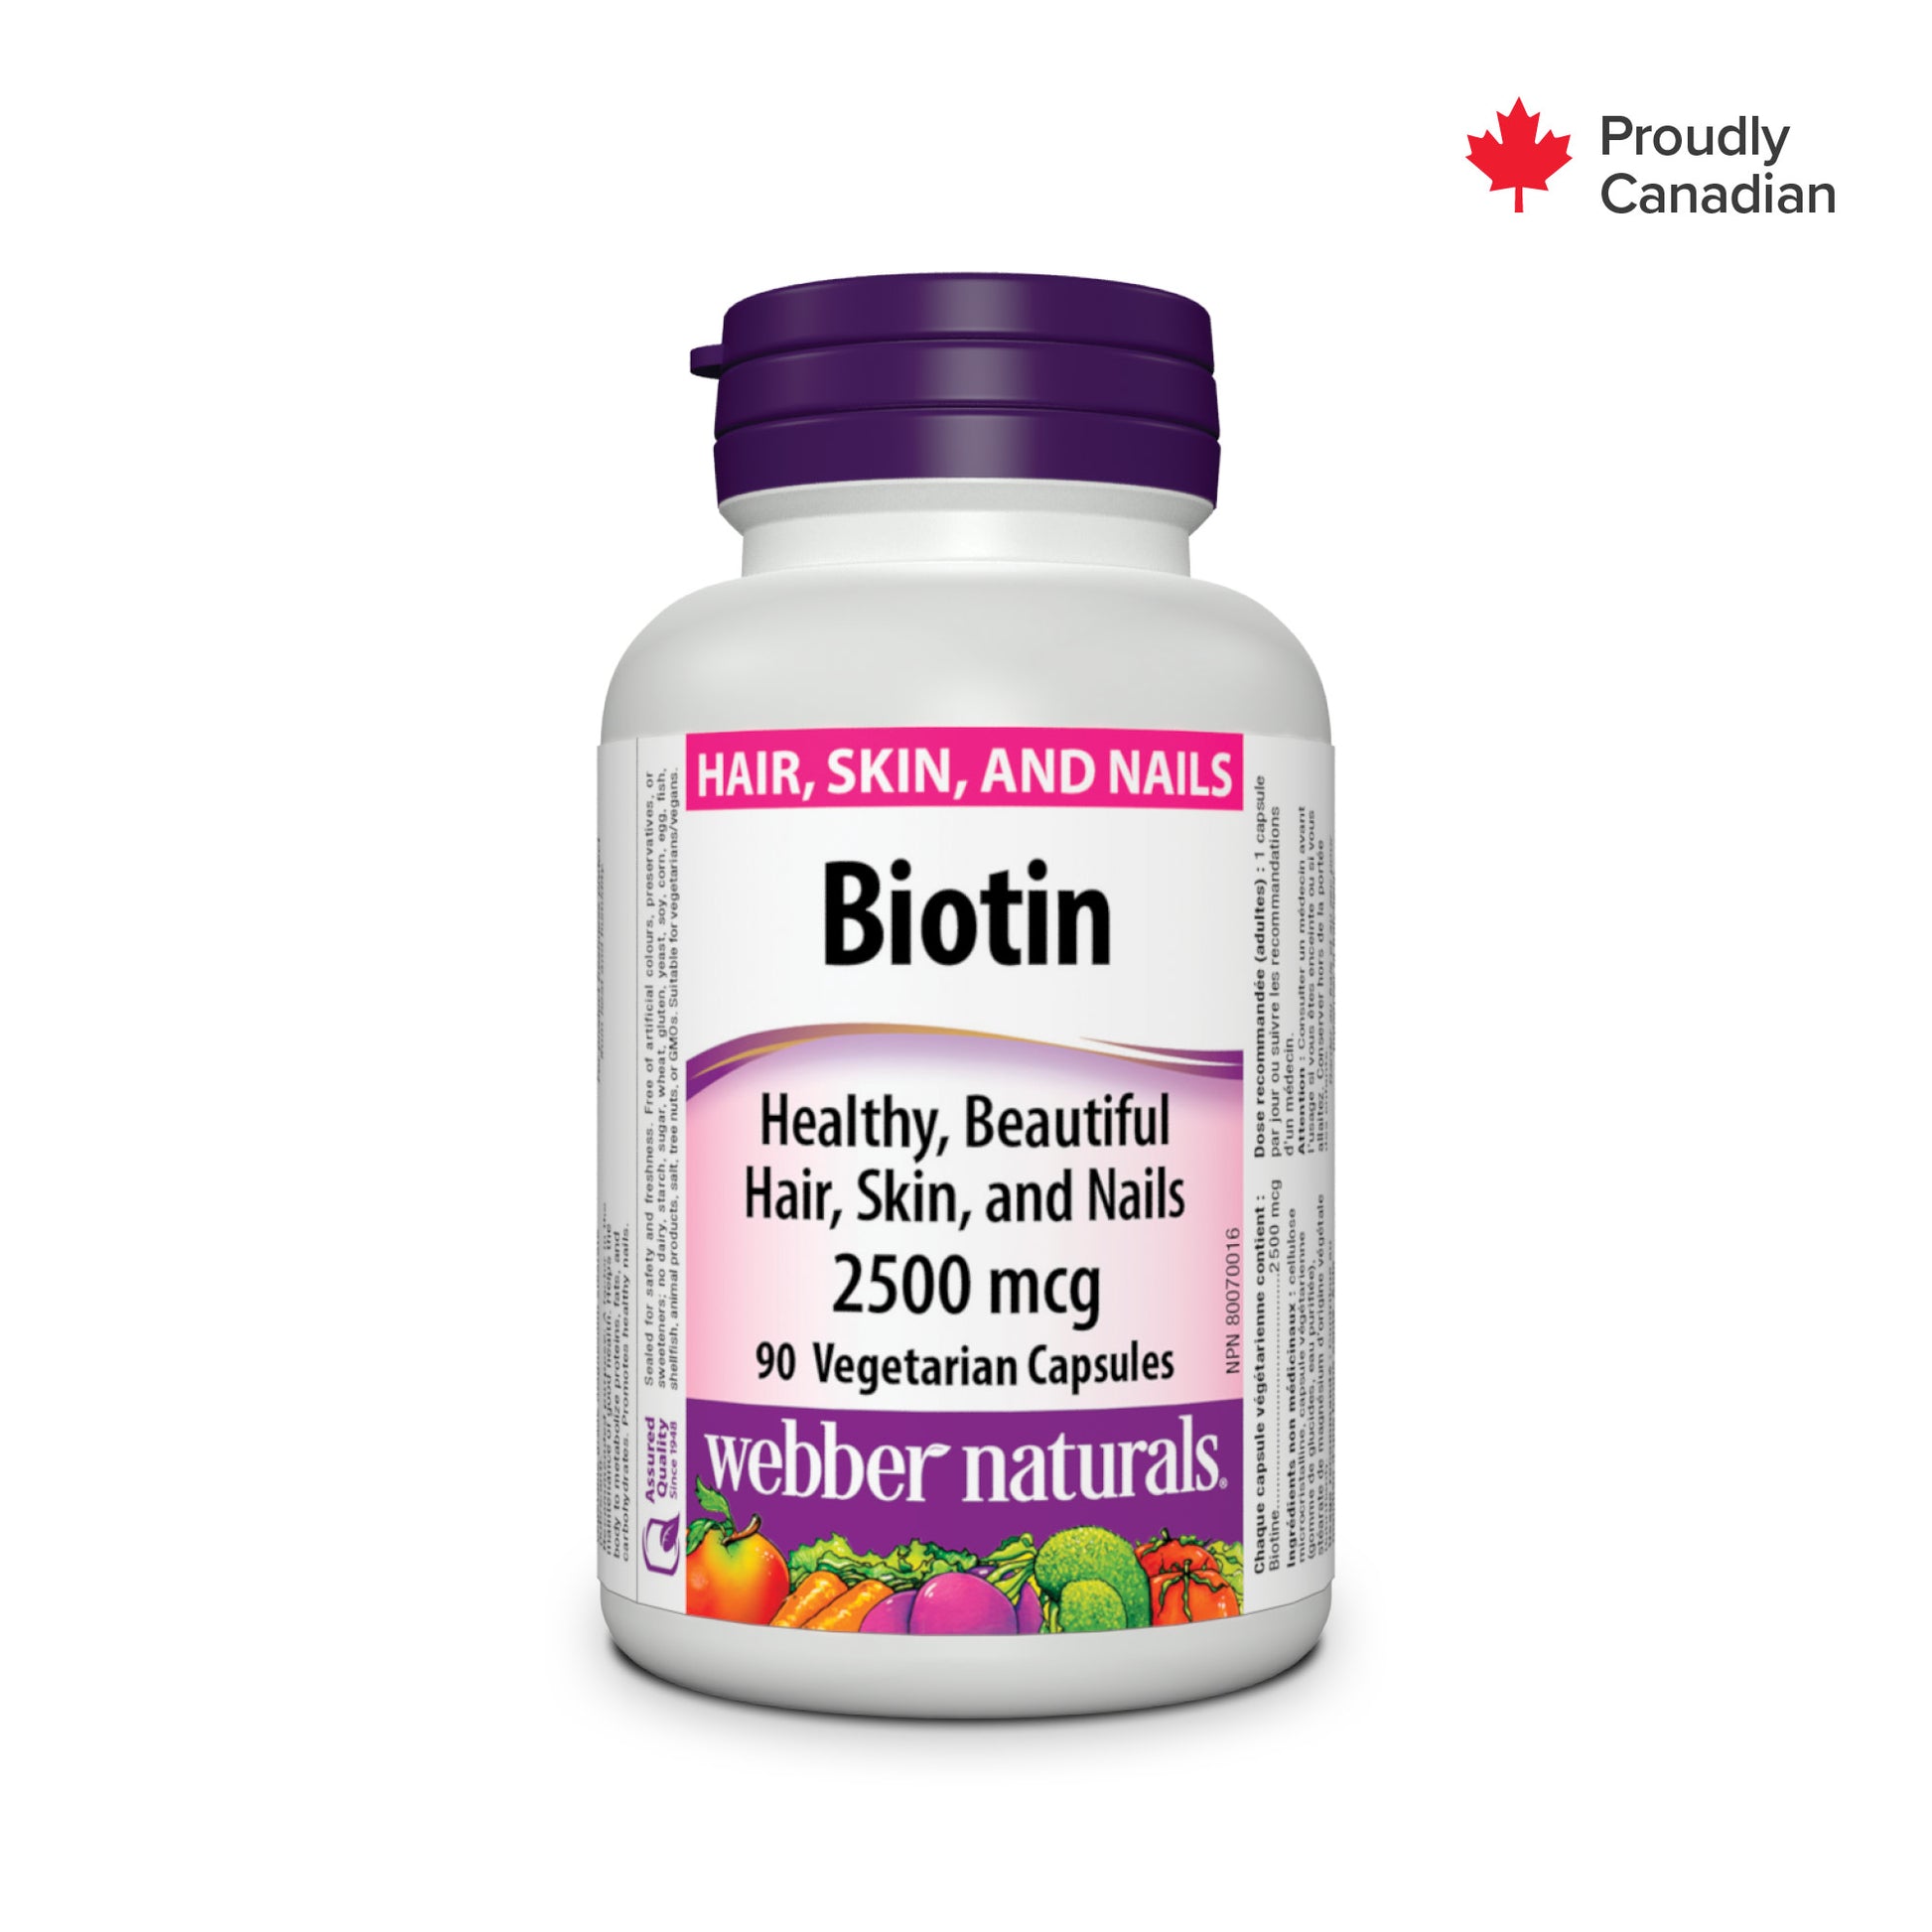 Biotine 2 500 mcg for Webber Naturals|v|hi-res|WN3291